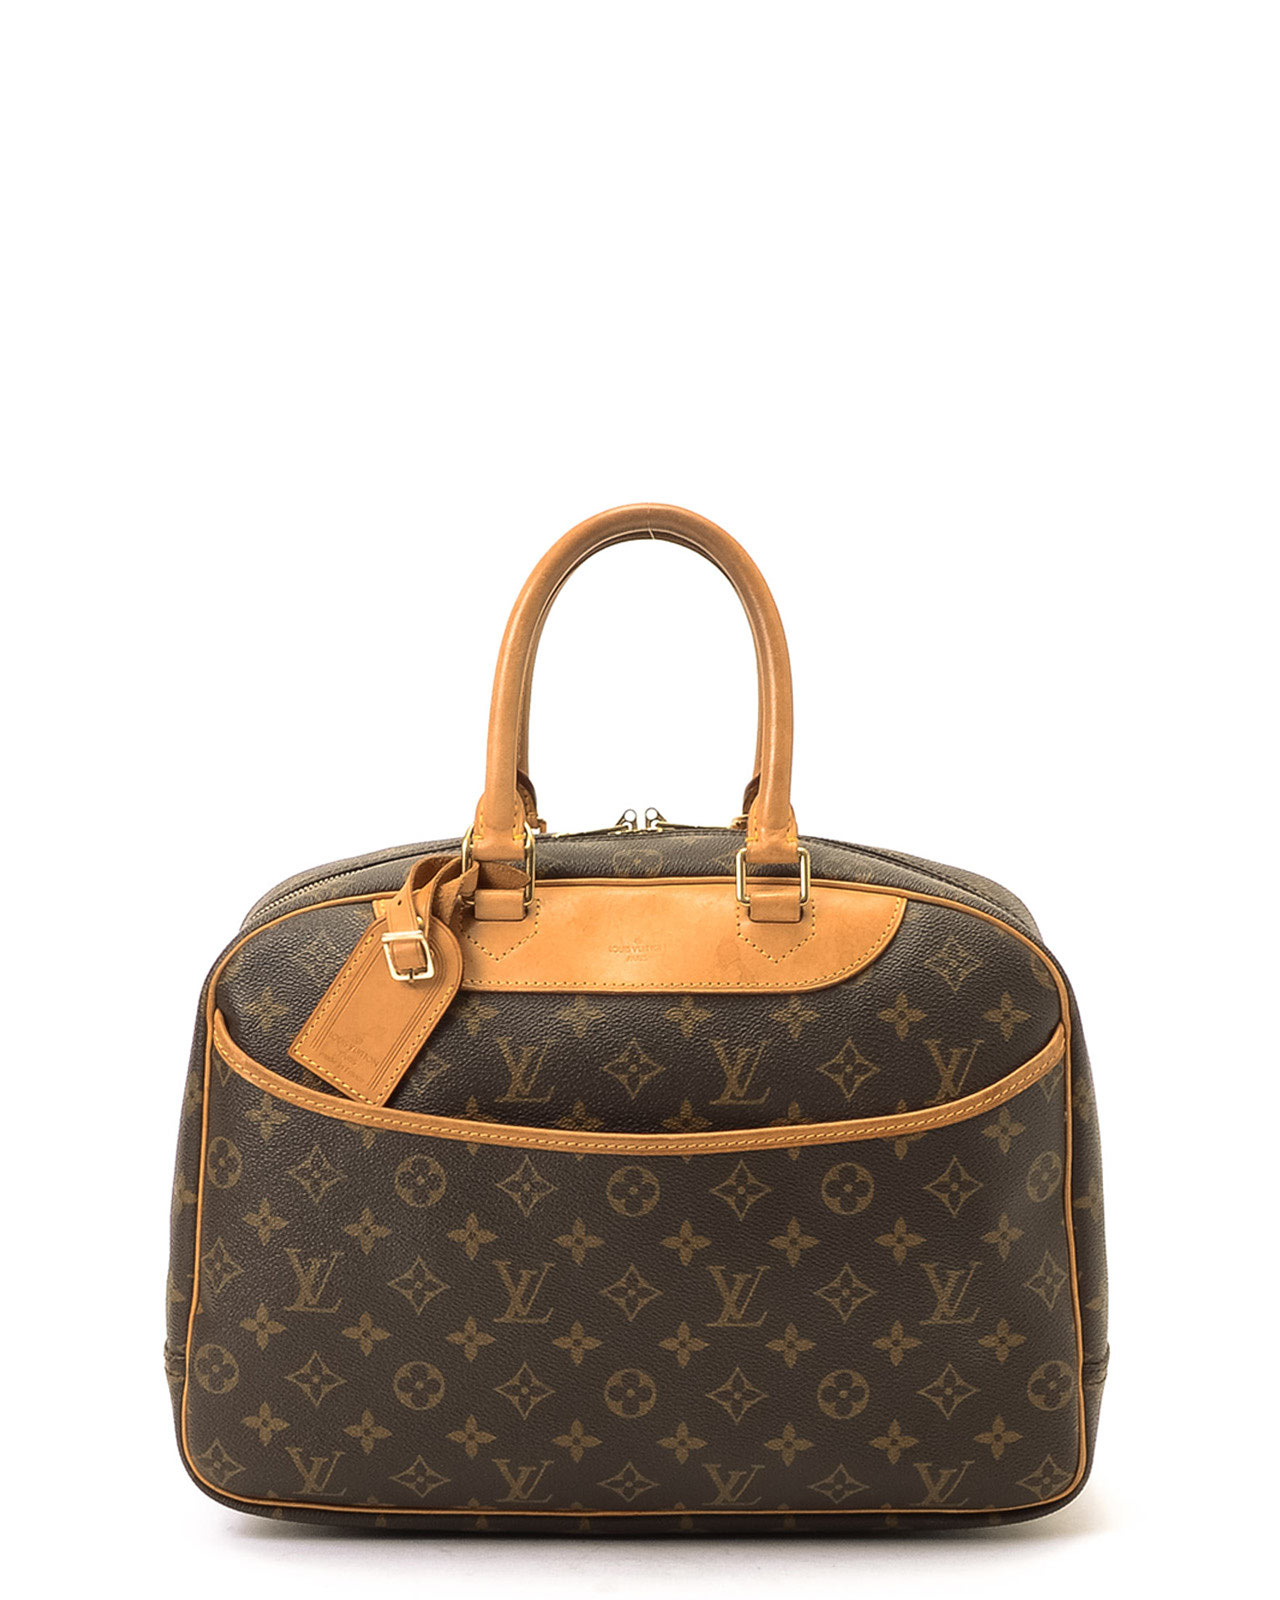 Lyst - Louis Vuitton Brown Monogram Deauville Handbag in Brown